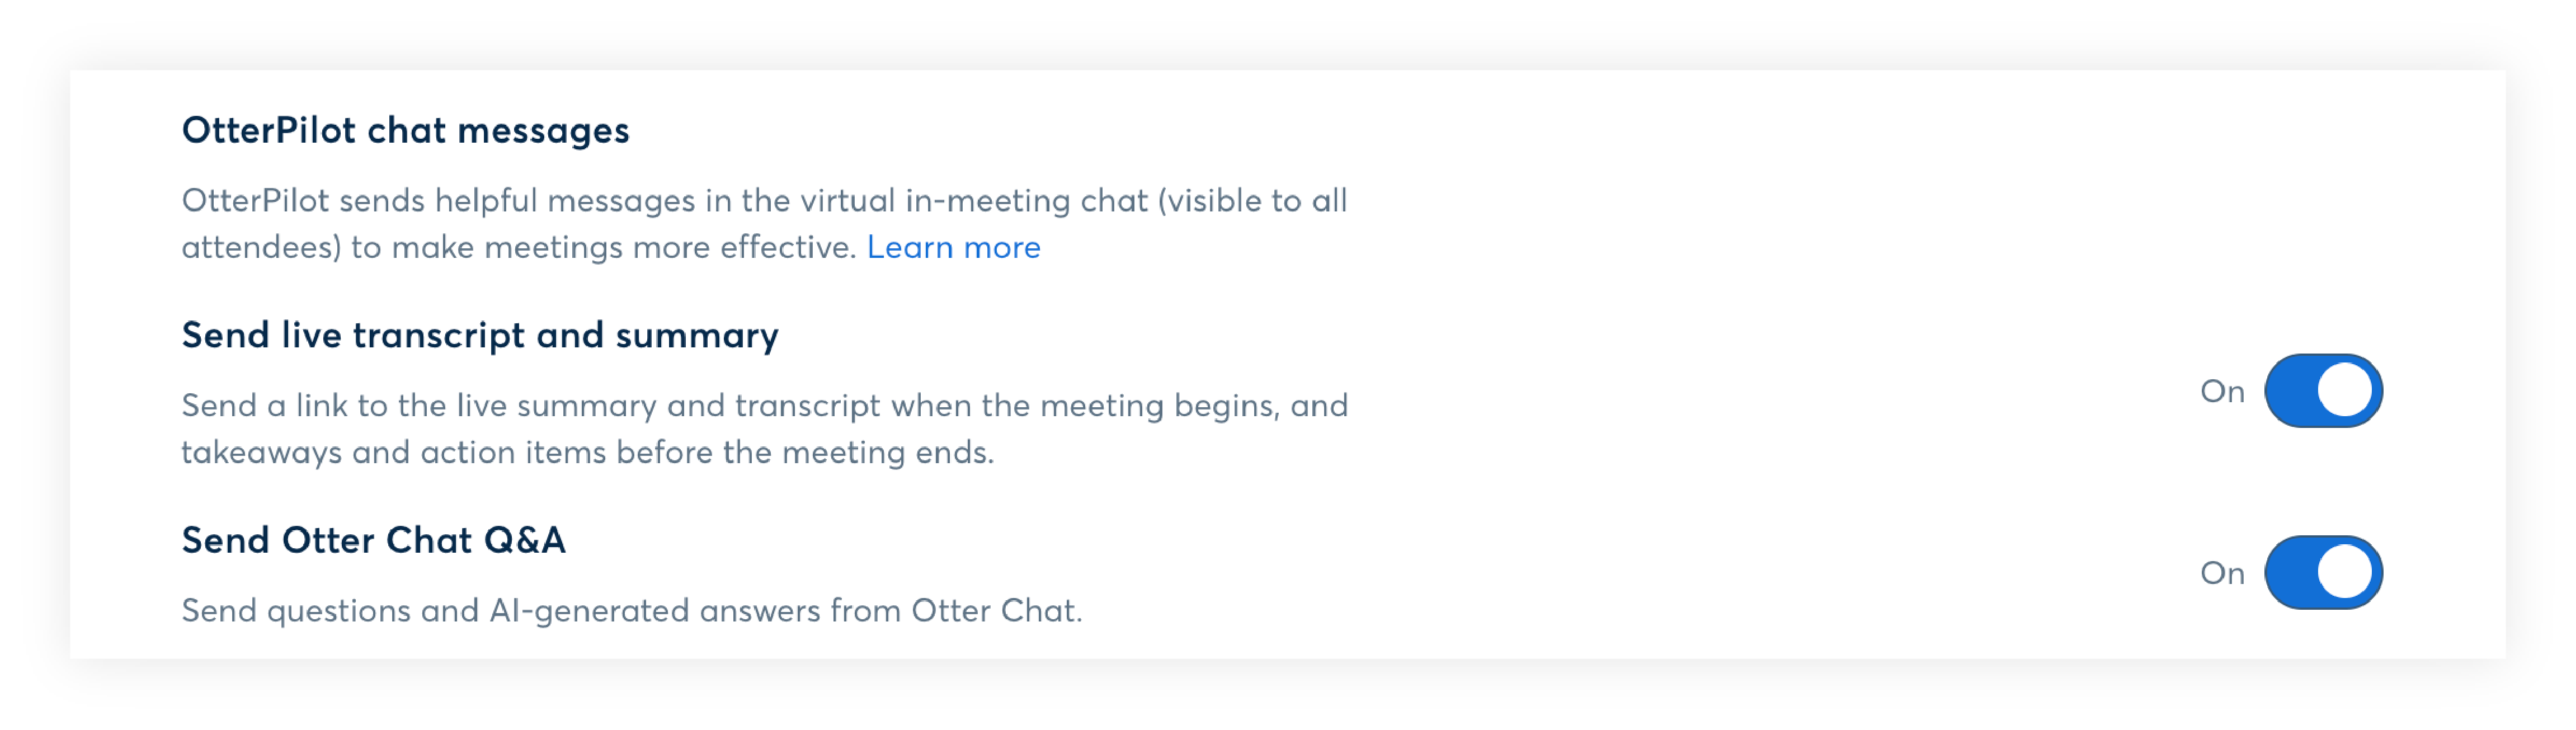 otterpilot chat messages.png